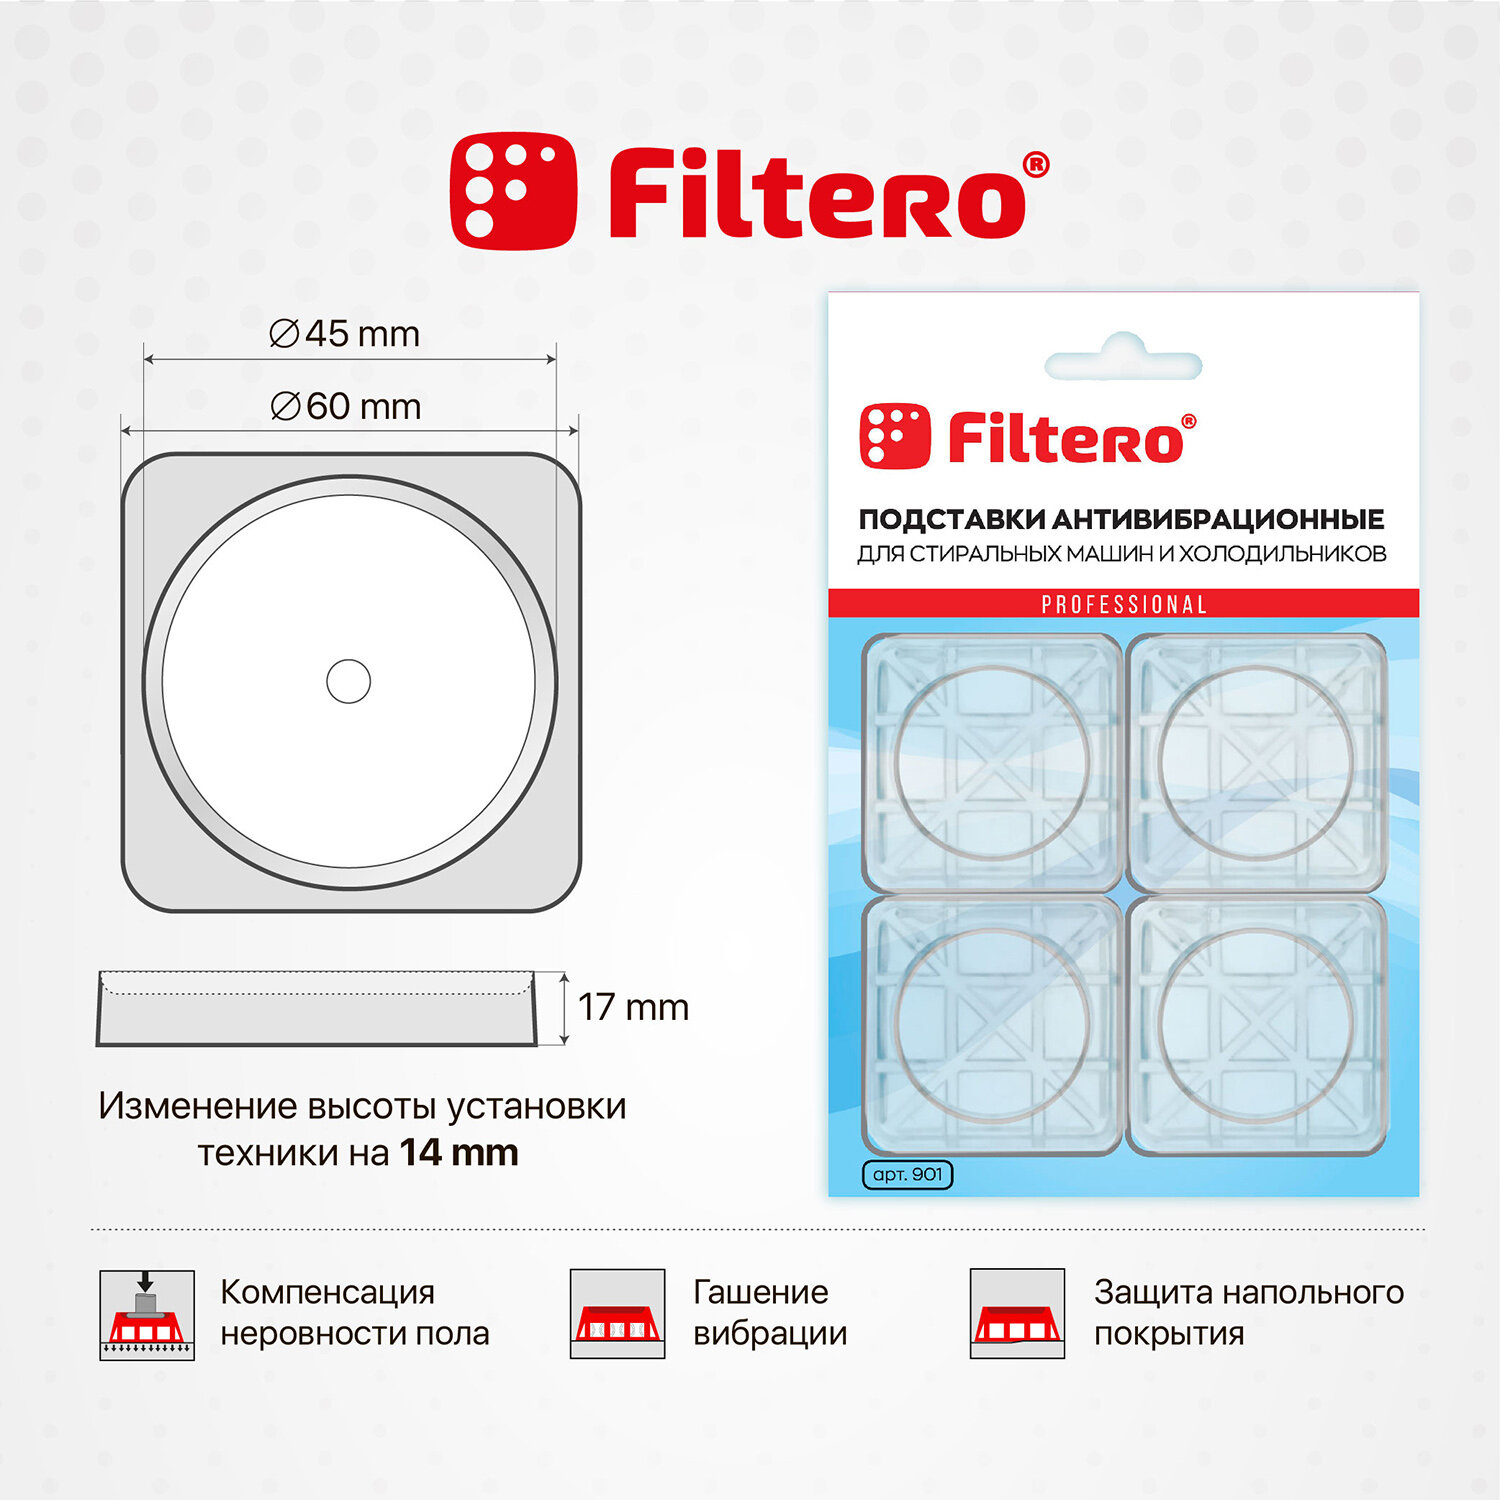 Антивибрационная подставка FILTERO Арт.901, 4шт, для стиральных машин и холодильников - фото №2